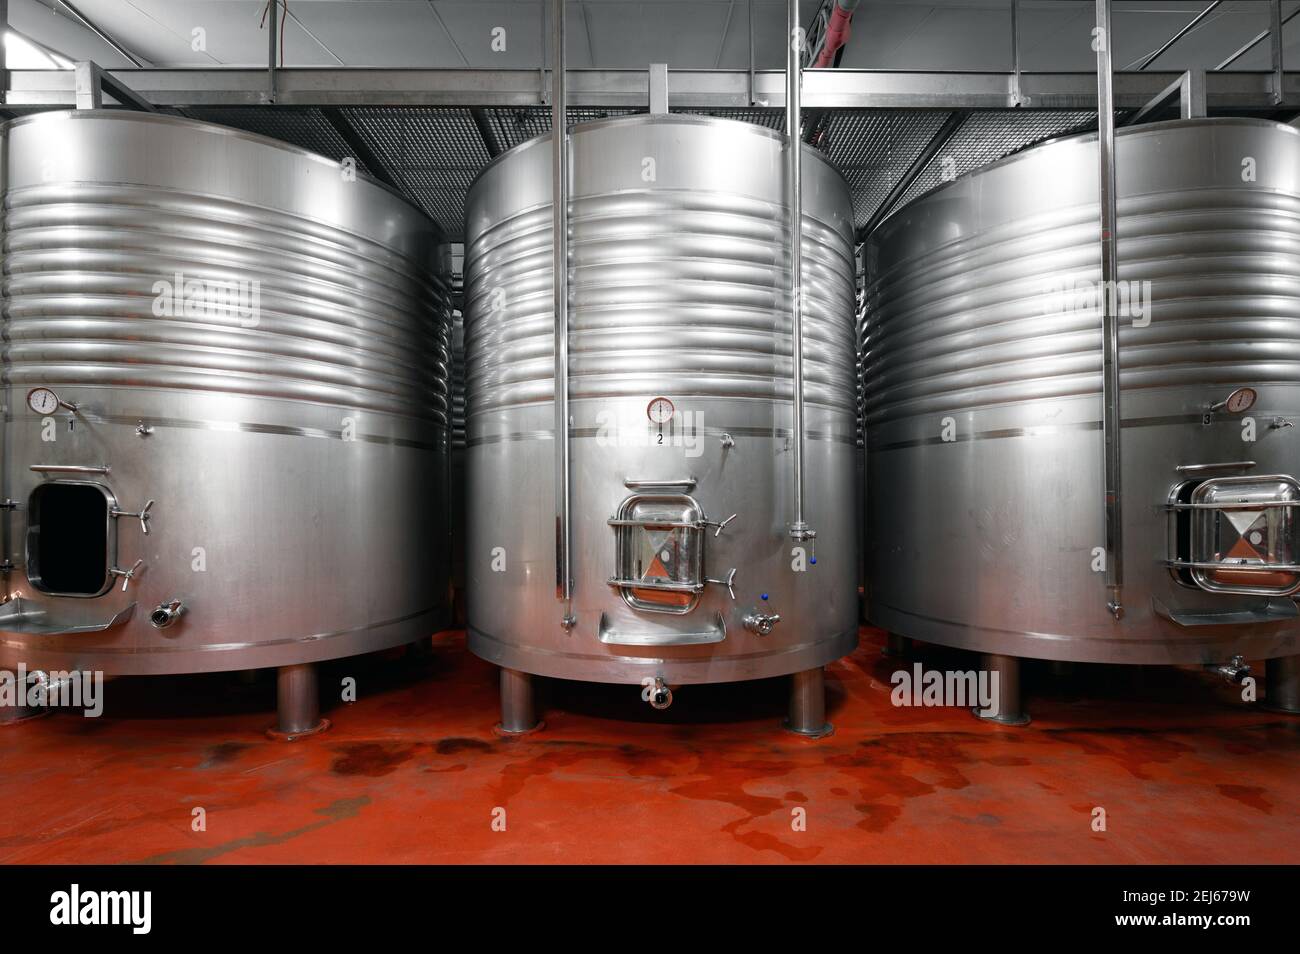 Vasche industriali in acciaio inox in una moderna fabbrica di birra. Foto di alta qualità. Foto Stock